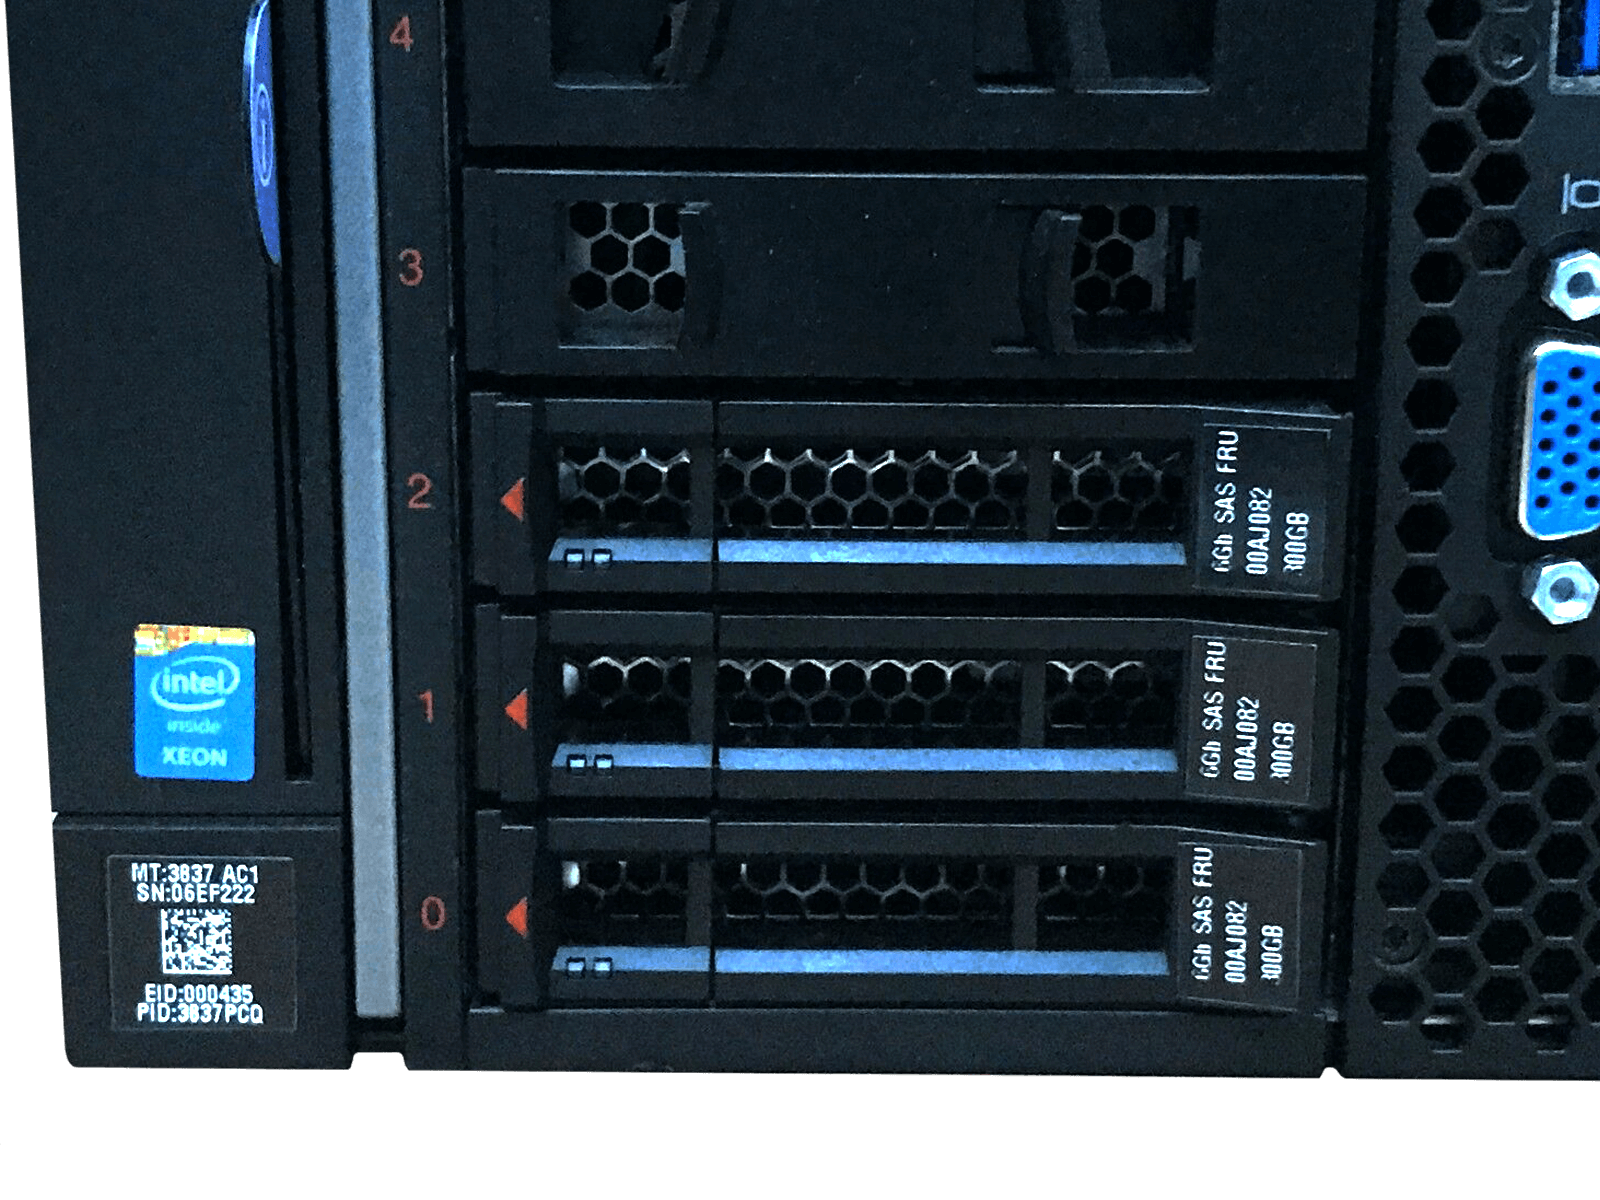 IBM x3850 X6 Server 4x Xeon E7-8893 v3 1024GB DDR4 RAM 3x 300GB 15K 4x 1400W PSU